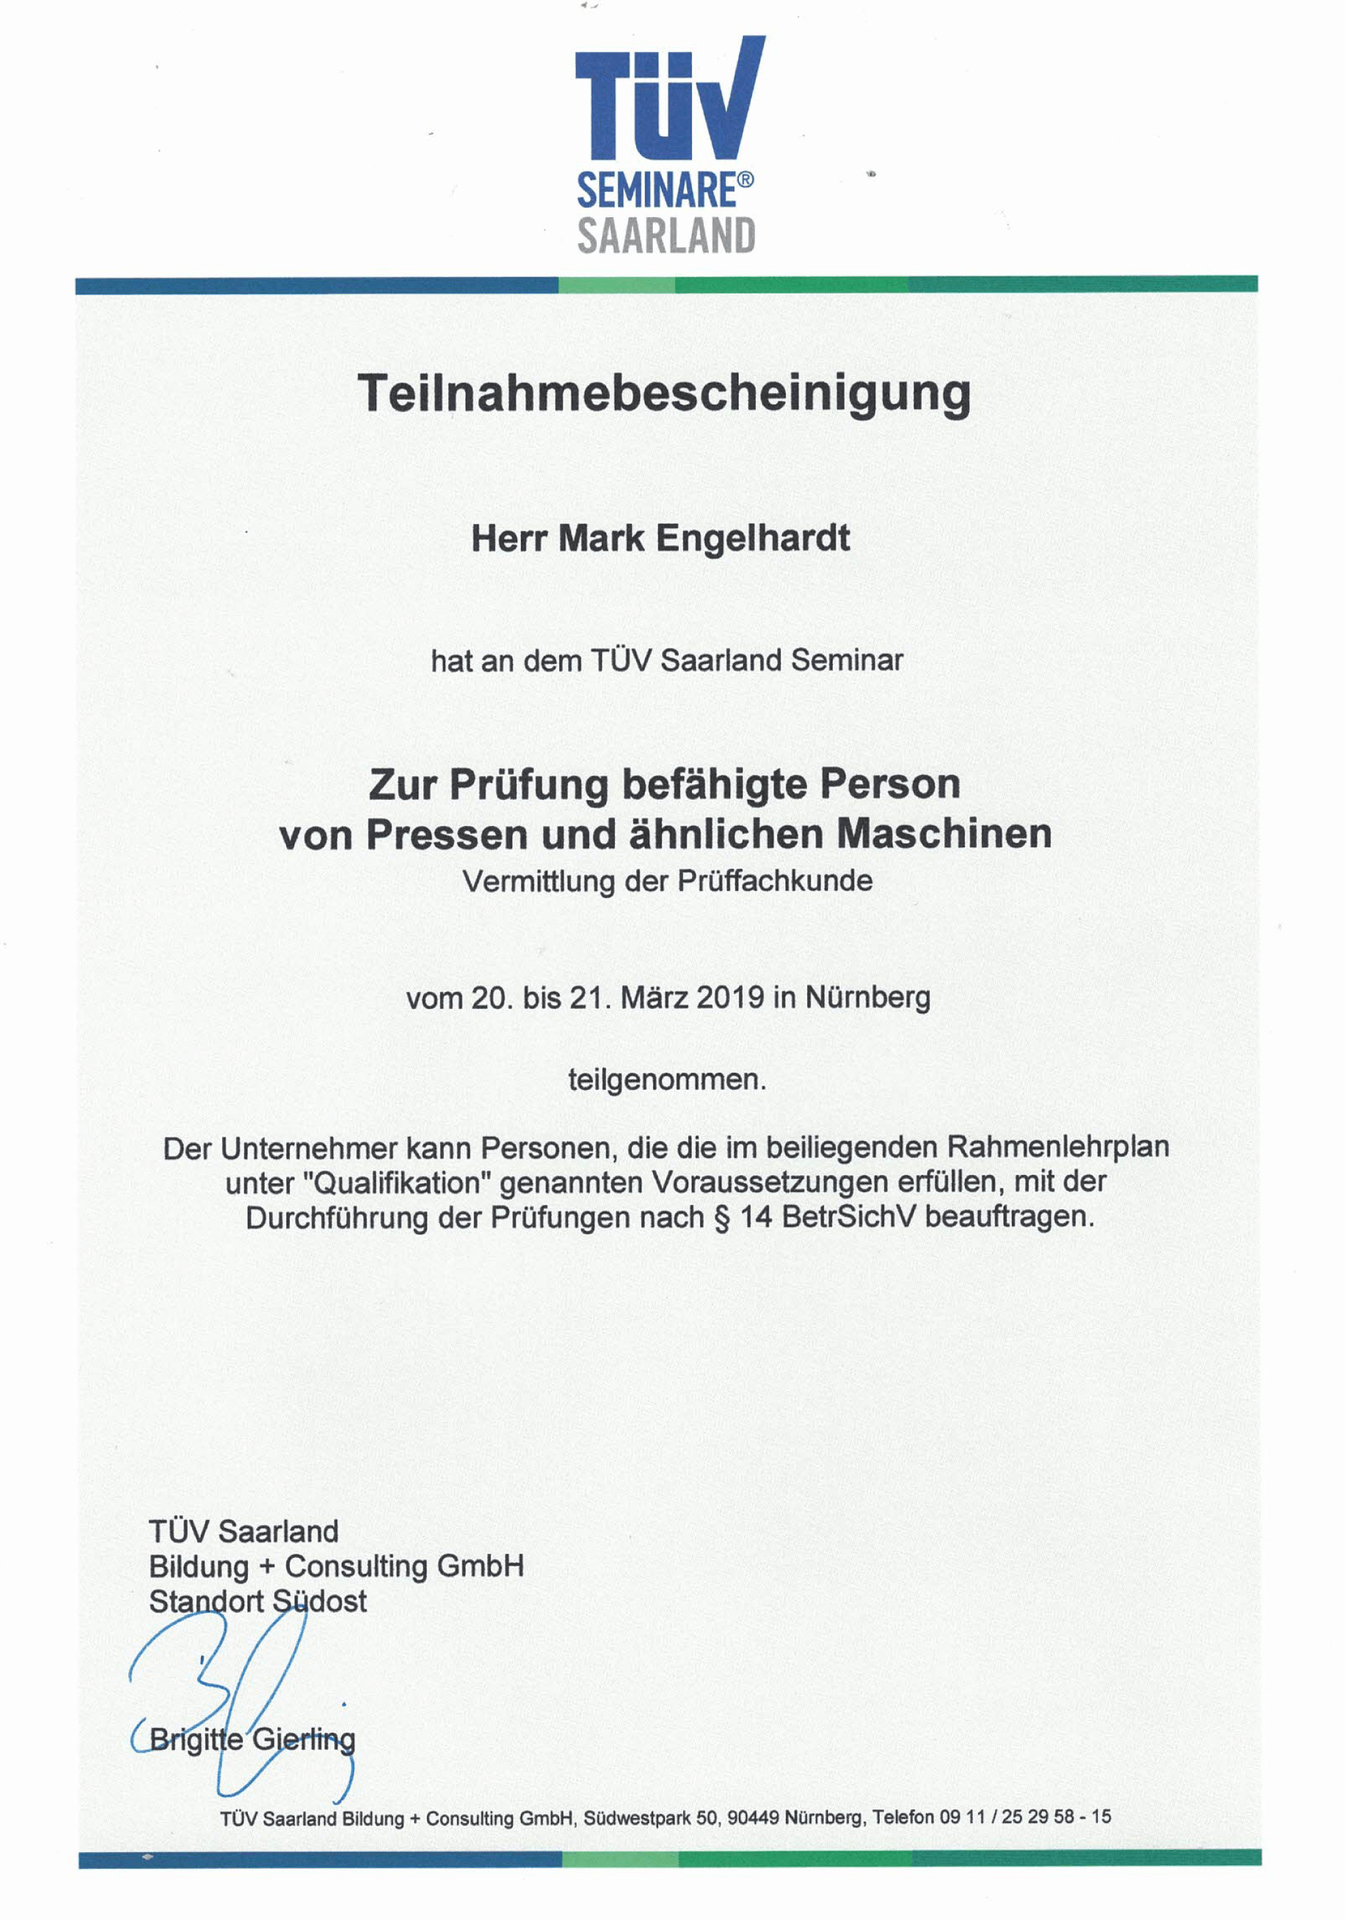 Teilnahmebescheinigung-TÜV-Seminar-befähigte-Person-Pressen-Mark-Engelhardt